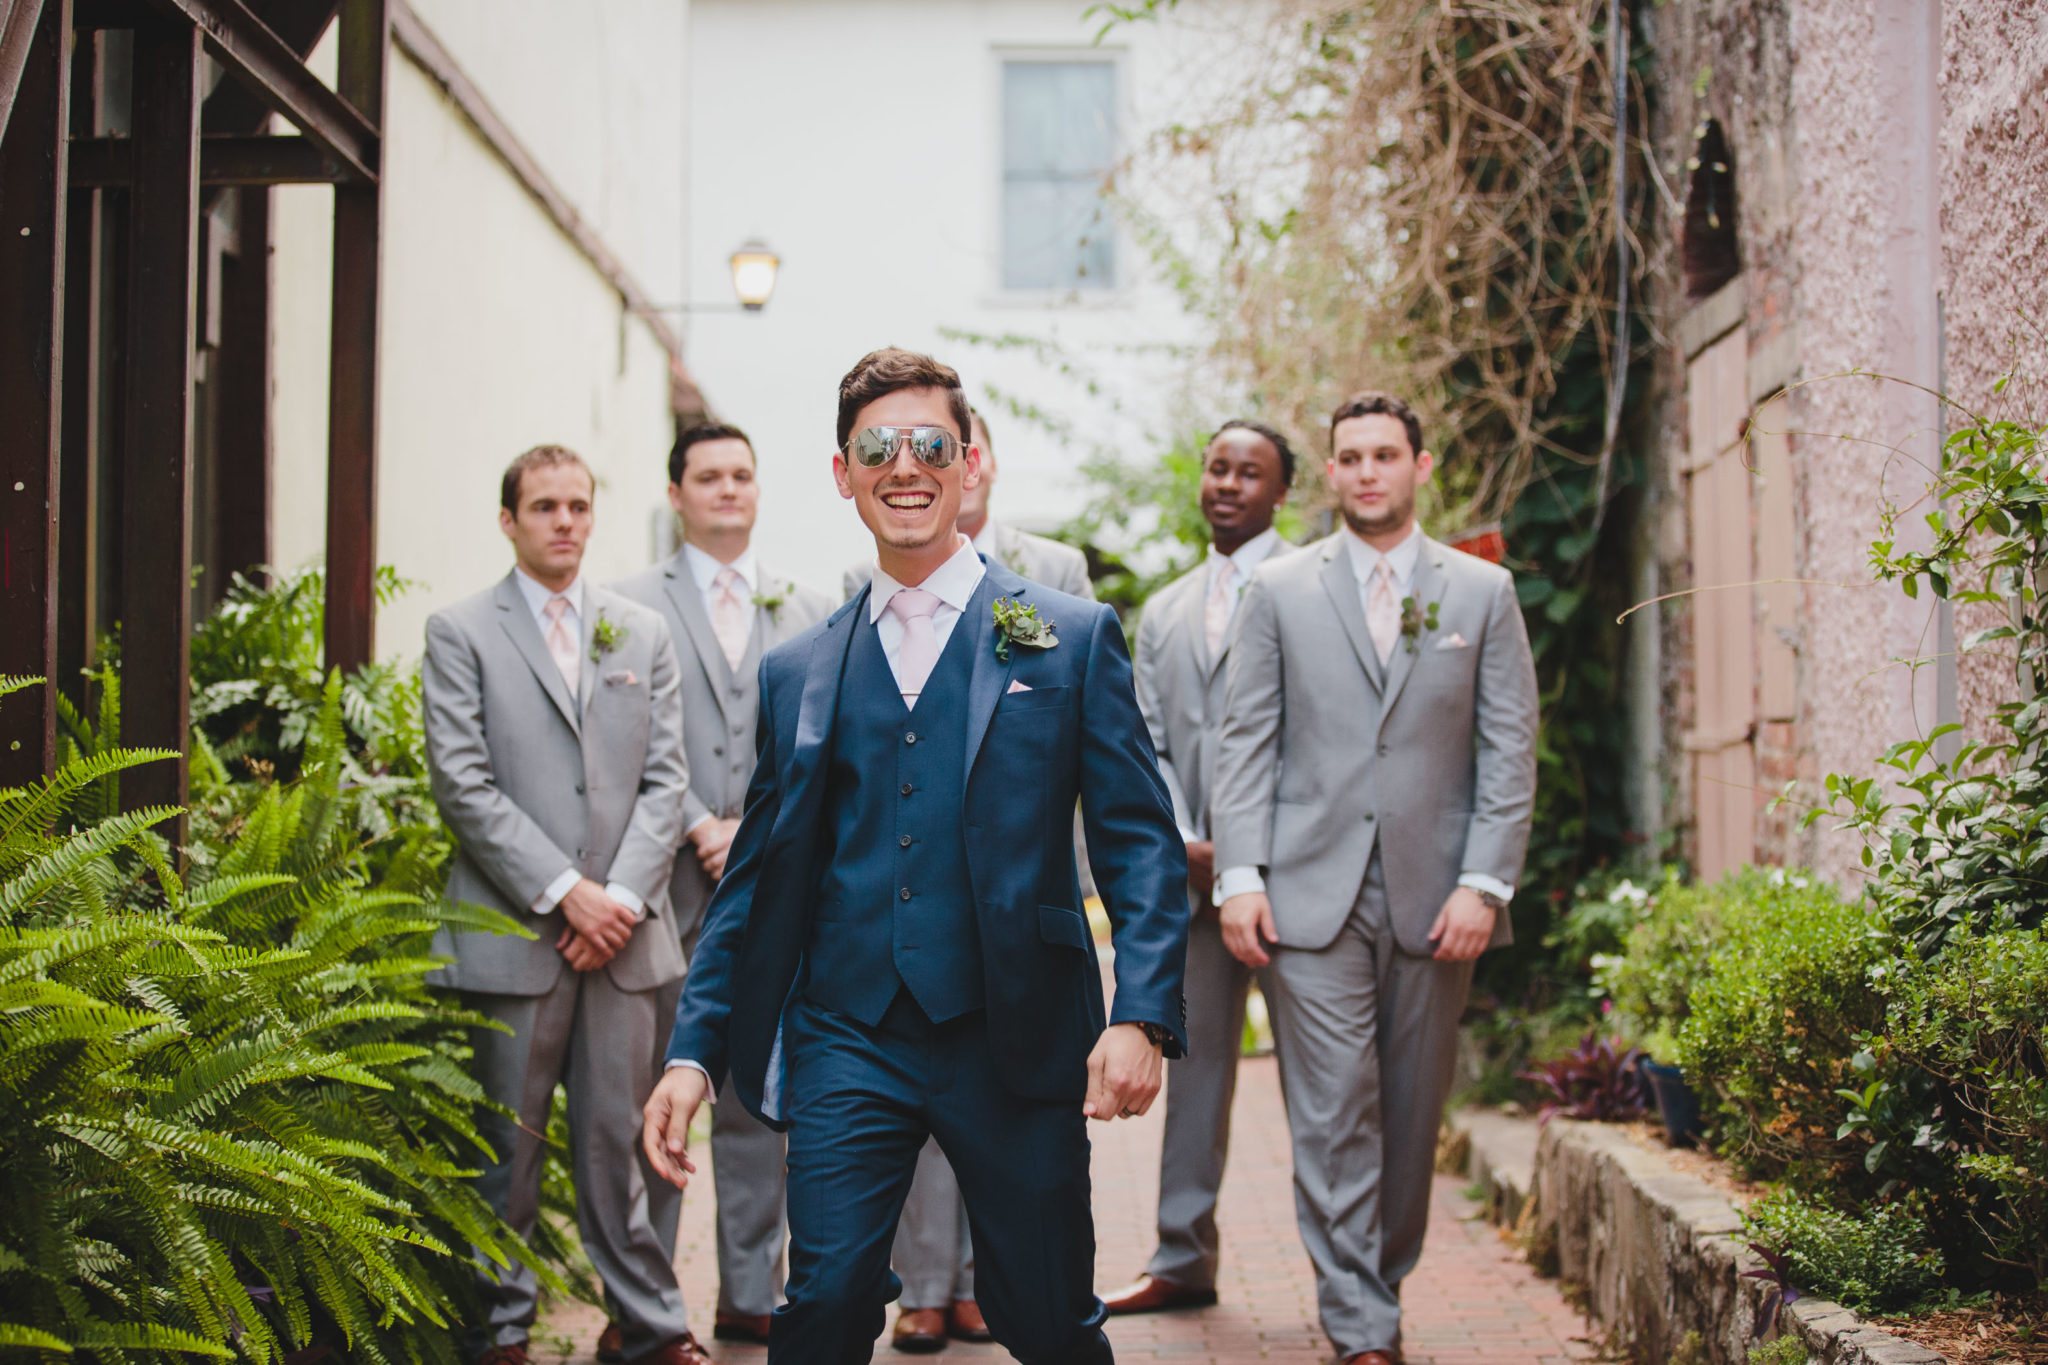 groom wearing sunglasses walking with groomsmen behind him